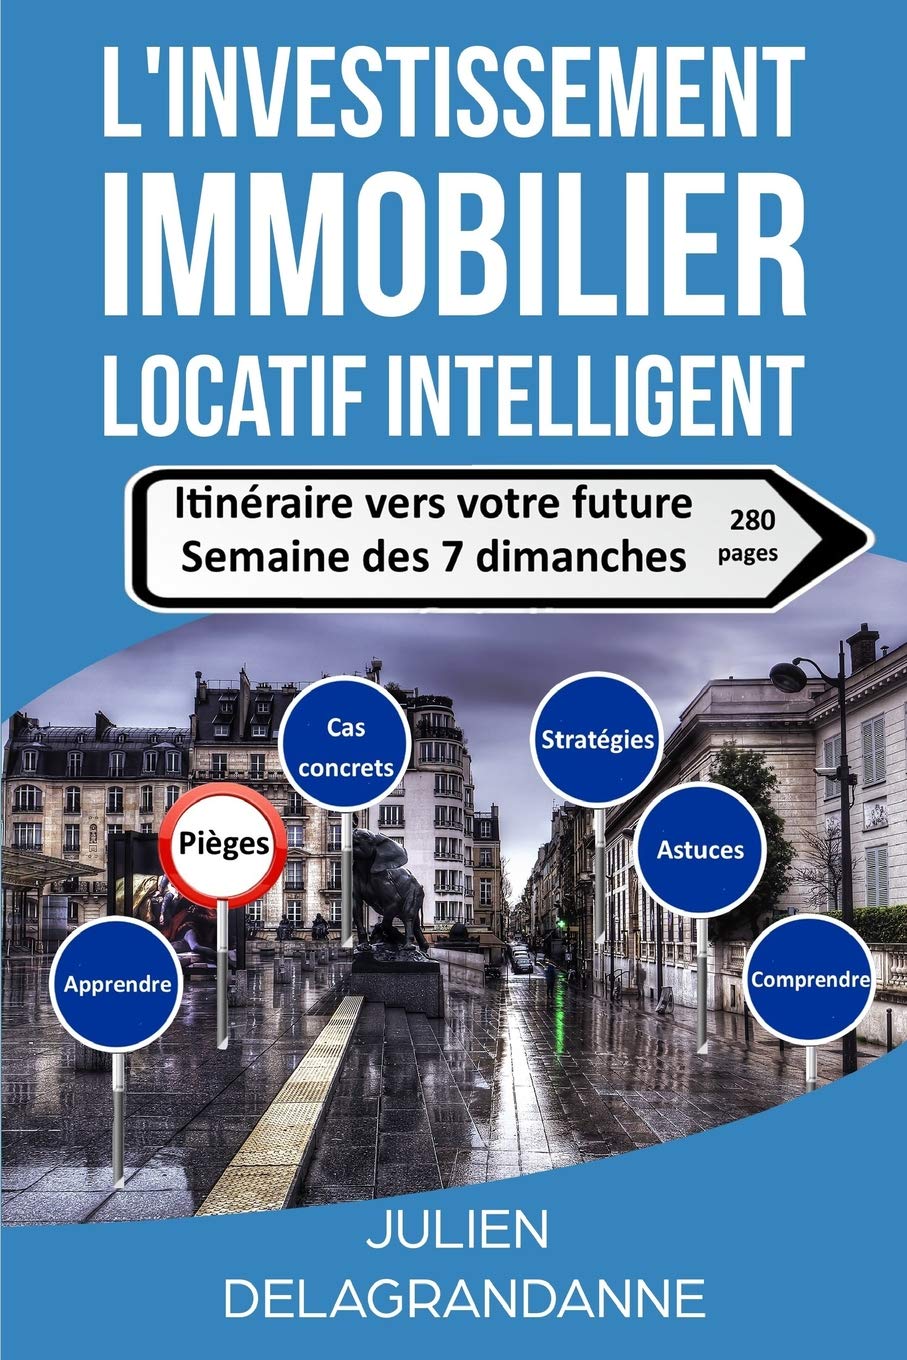 Couverture - L'investissement immobilier locatif intelligent - Julien Delagrandanne